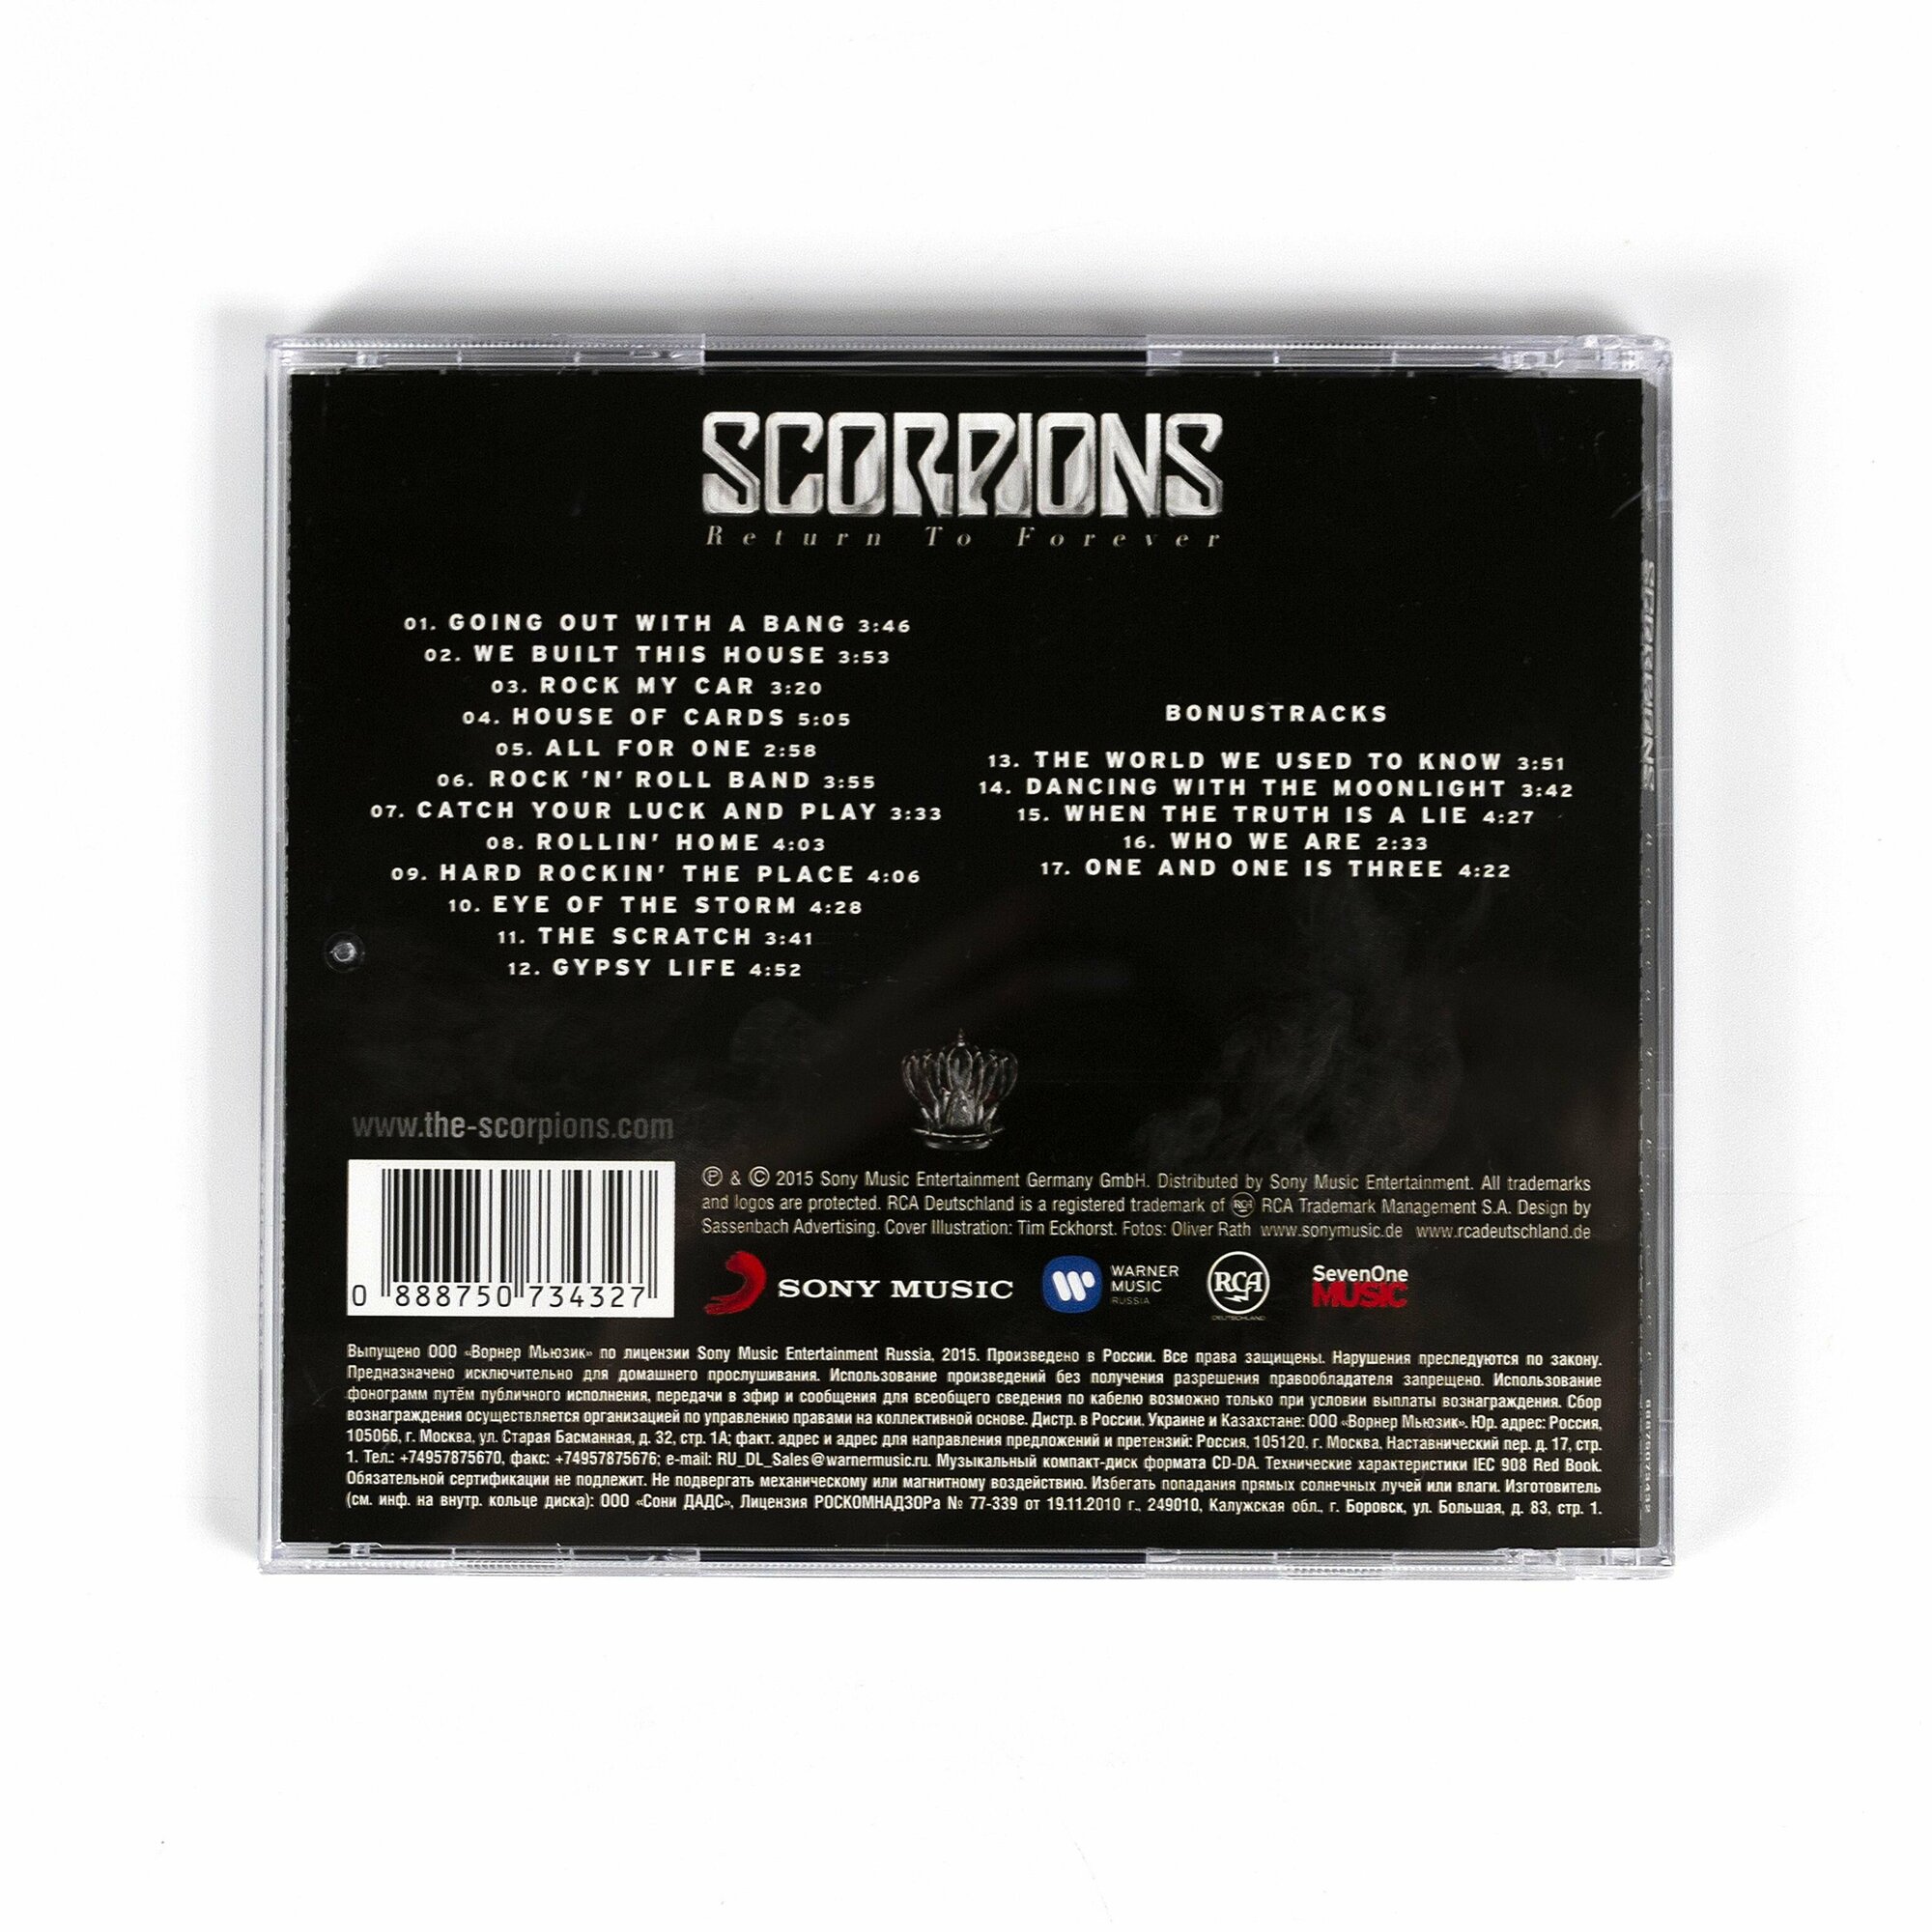 CD "SCORPIONS - Rreturn to Forever" Студийный альбом группы Scorpions, одной из наиболее известных рок-групп мира